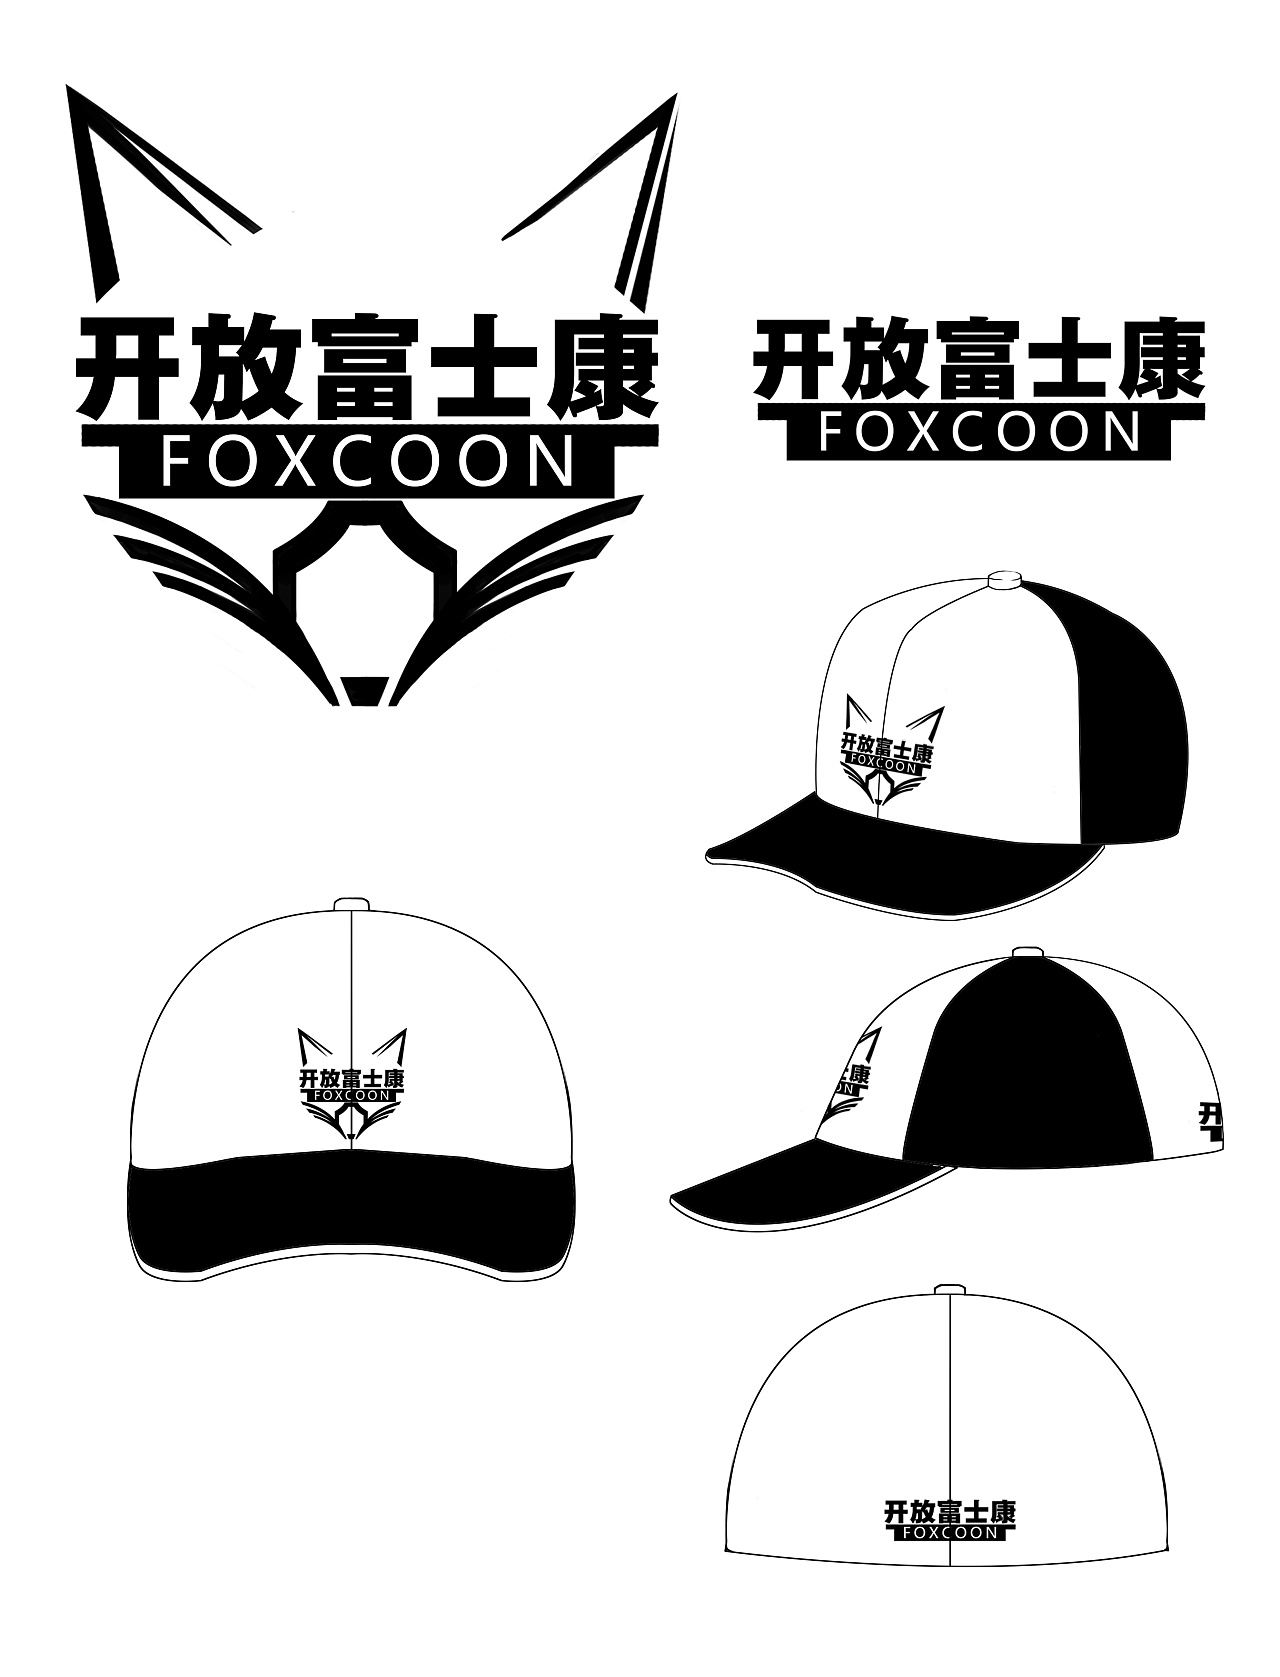 帽子logo设计图片欣赏图片